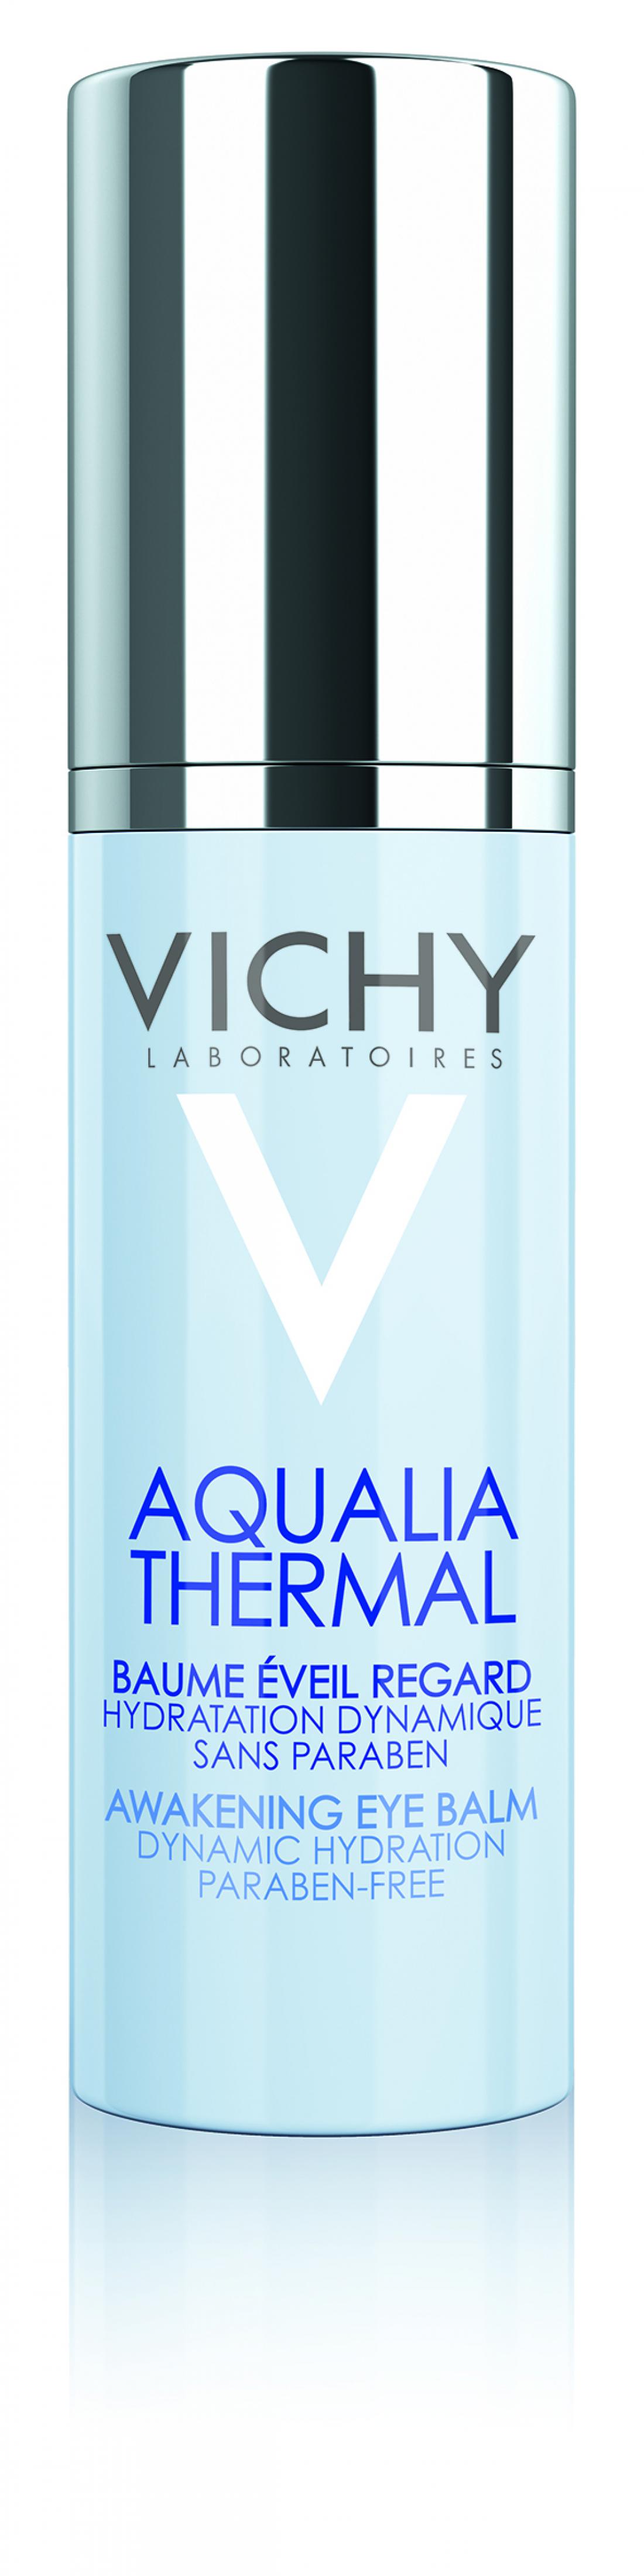 Vichyjev Aqualia Thermal balzam za oči ublaži linije zaradi suhosti, uravnovesi volumen kože na predelu okrog oči in jo dolgotrajno vlaži. Izdelek nanesite zjutraj proti zabuhlim očem in zvečer proti podočnjakom.